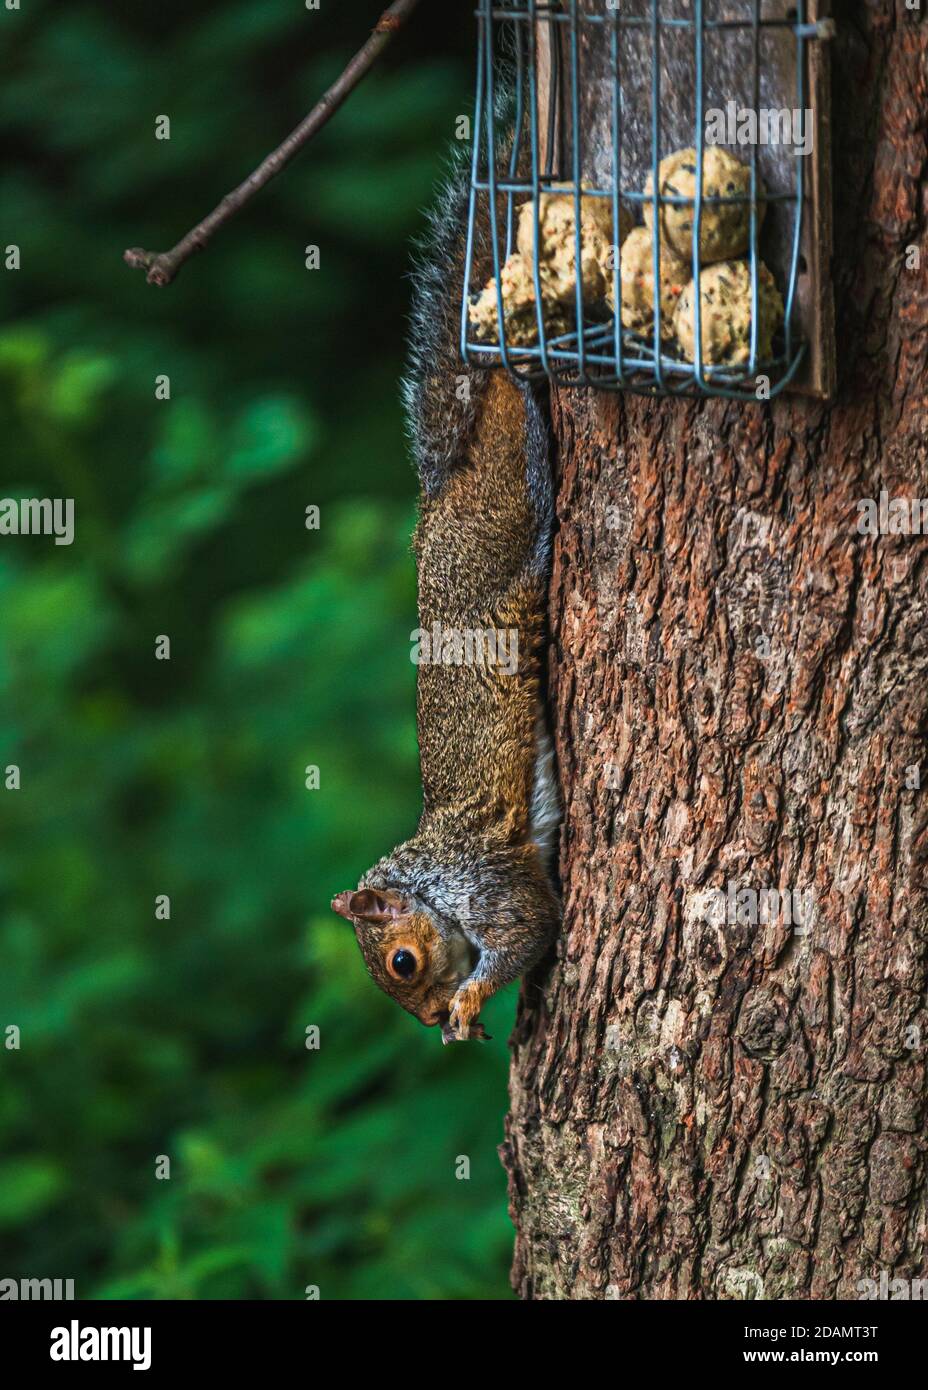 Écureuil gris se nourrissant dans la nature Banque D'Images